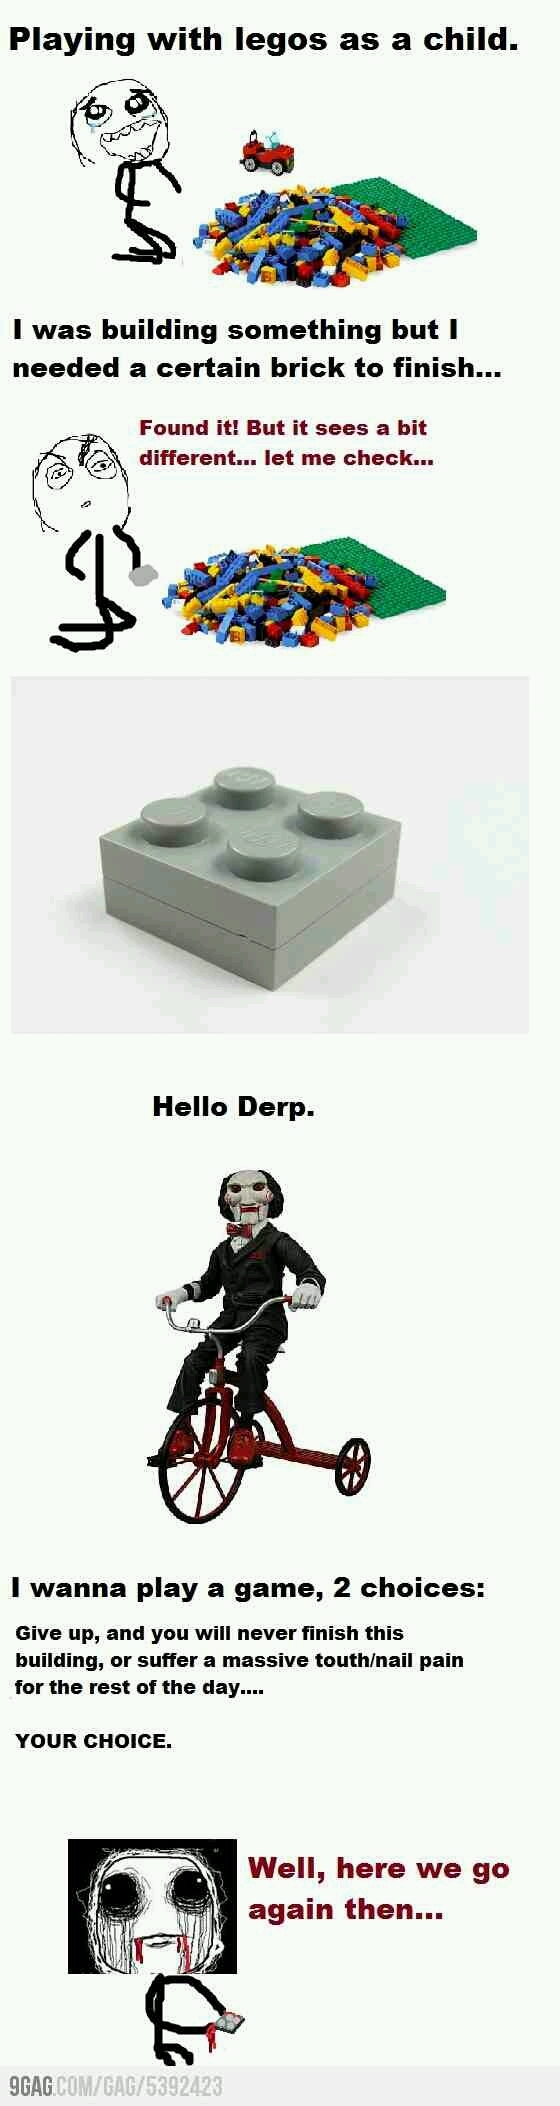 Lego Saw - meme